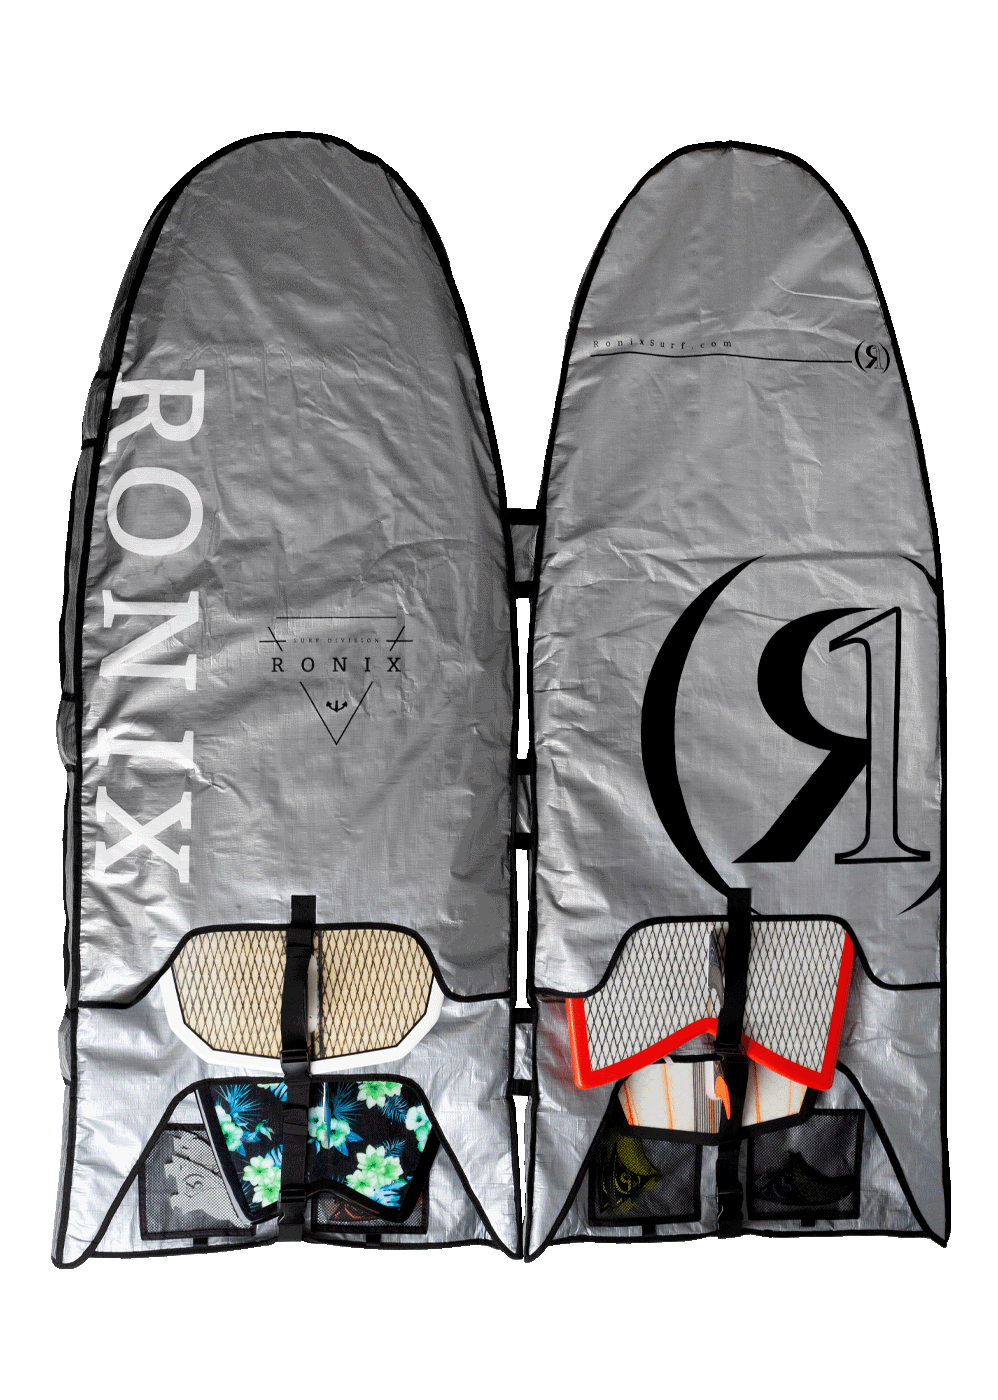 Ronix Bimini Top 4 Surf Board Rack/Bag